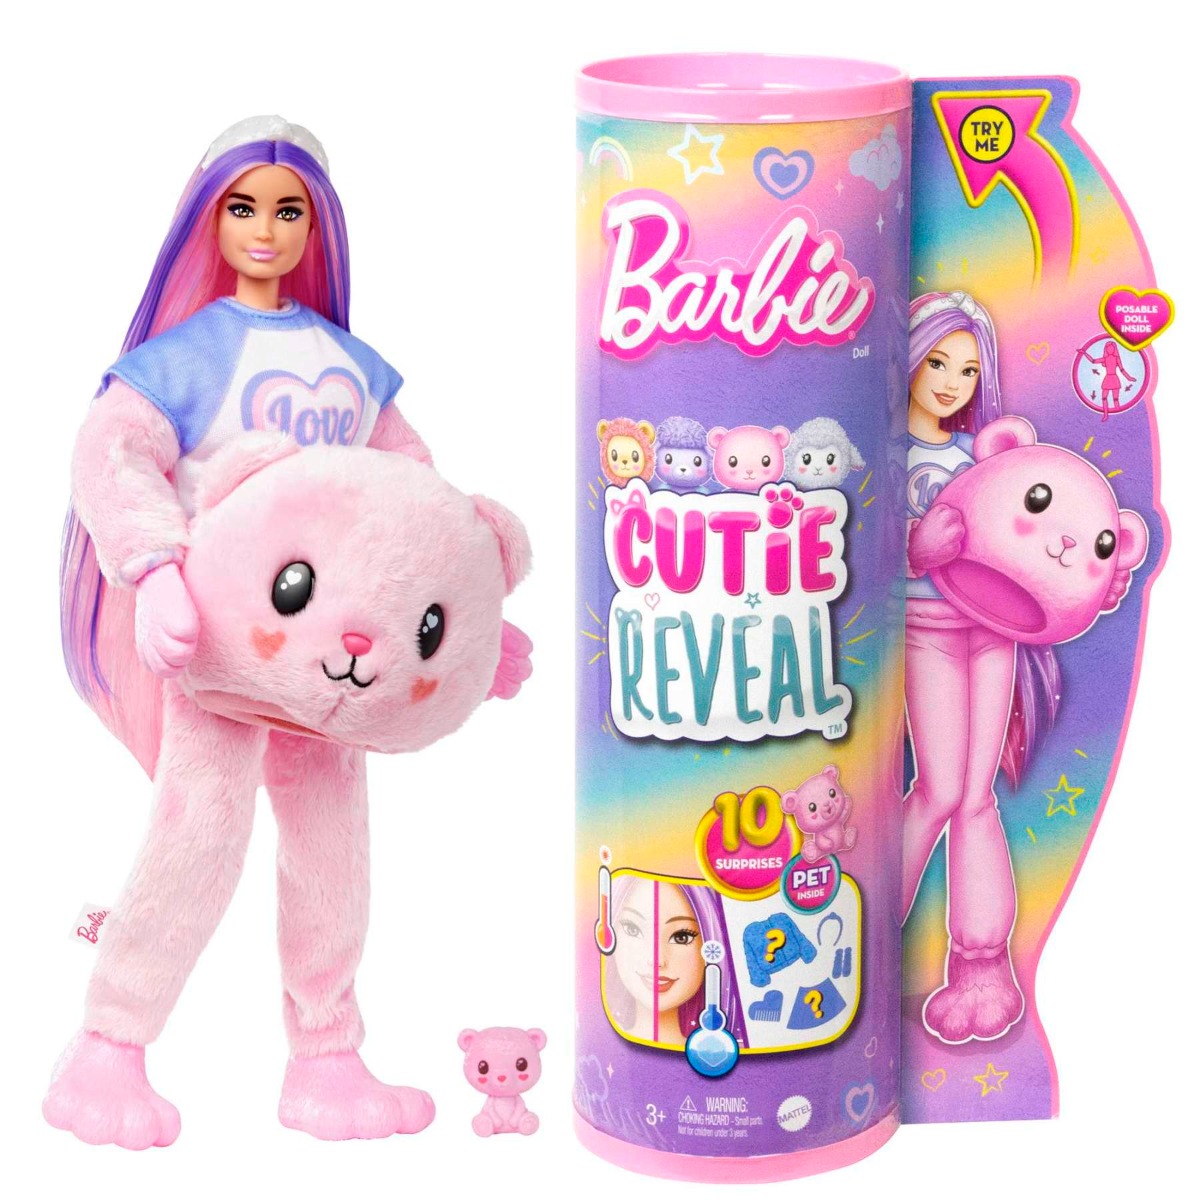  Papusa surpriza Barbie, Cutie Reveal Teddy, 10 surprize, HKR04 